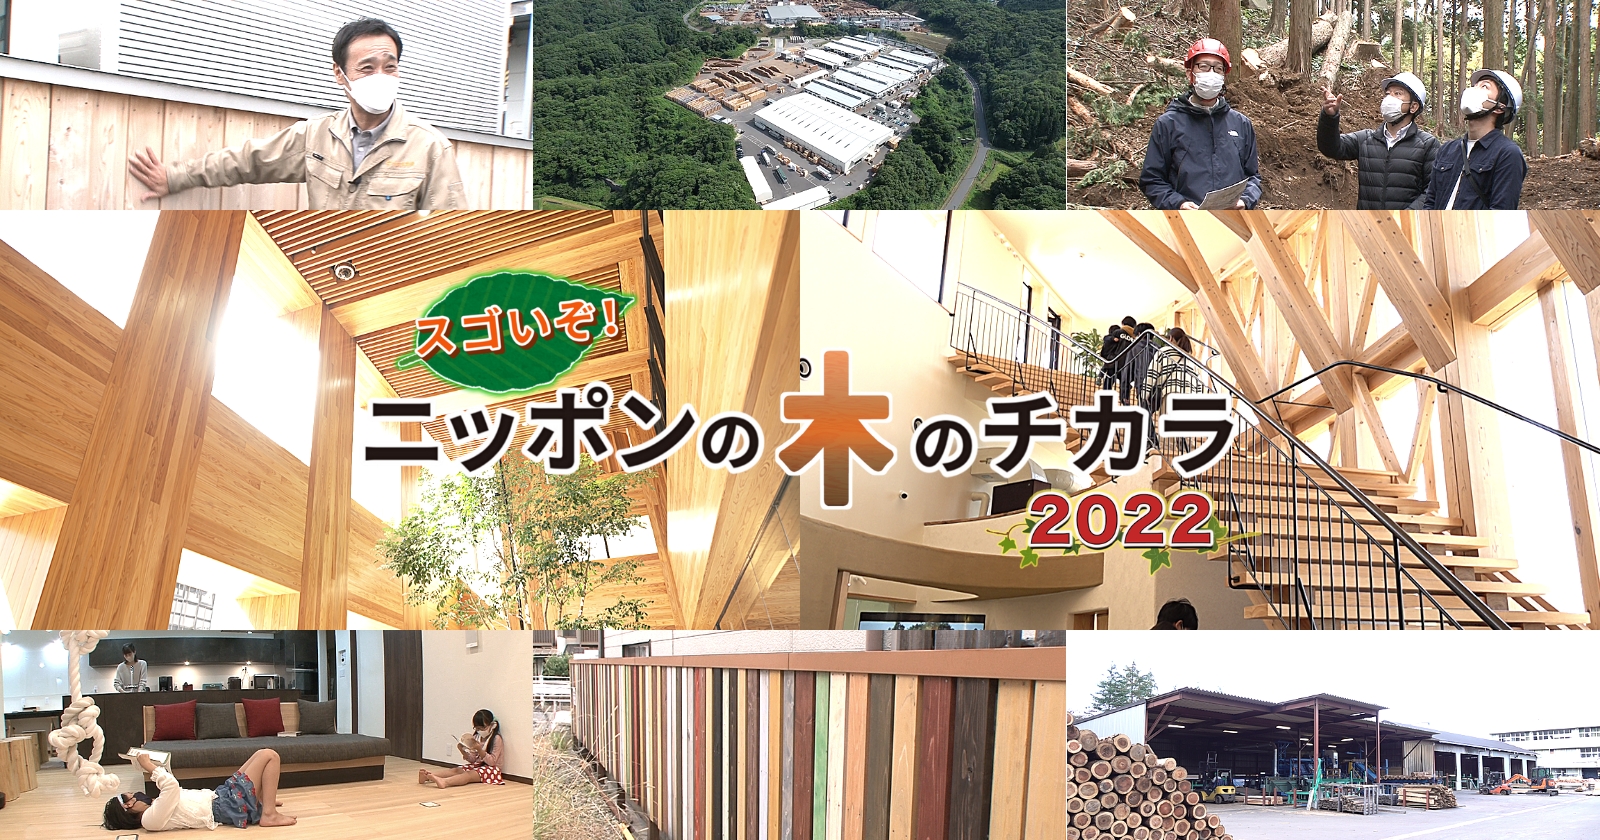 スゴいぞ！ニッポンの木のチカラ2021　▽これまでの概念を覆す木材革命の展開